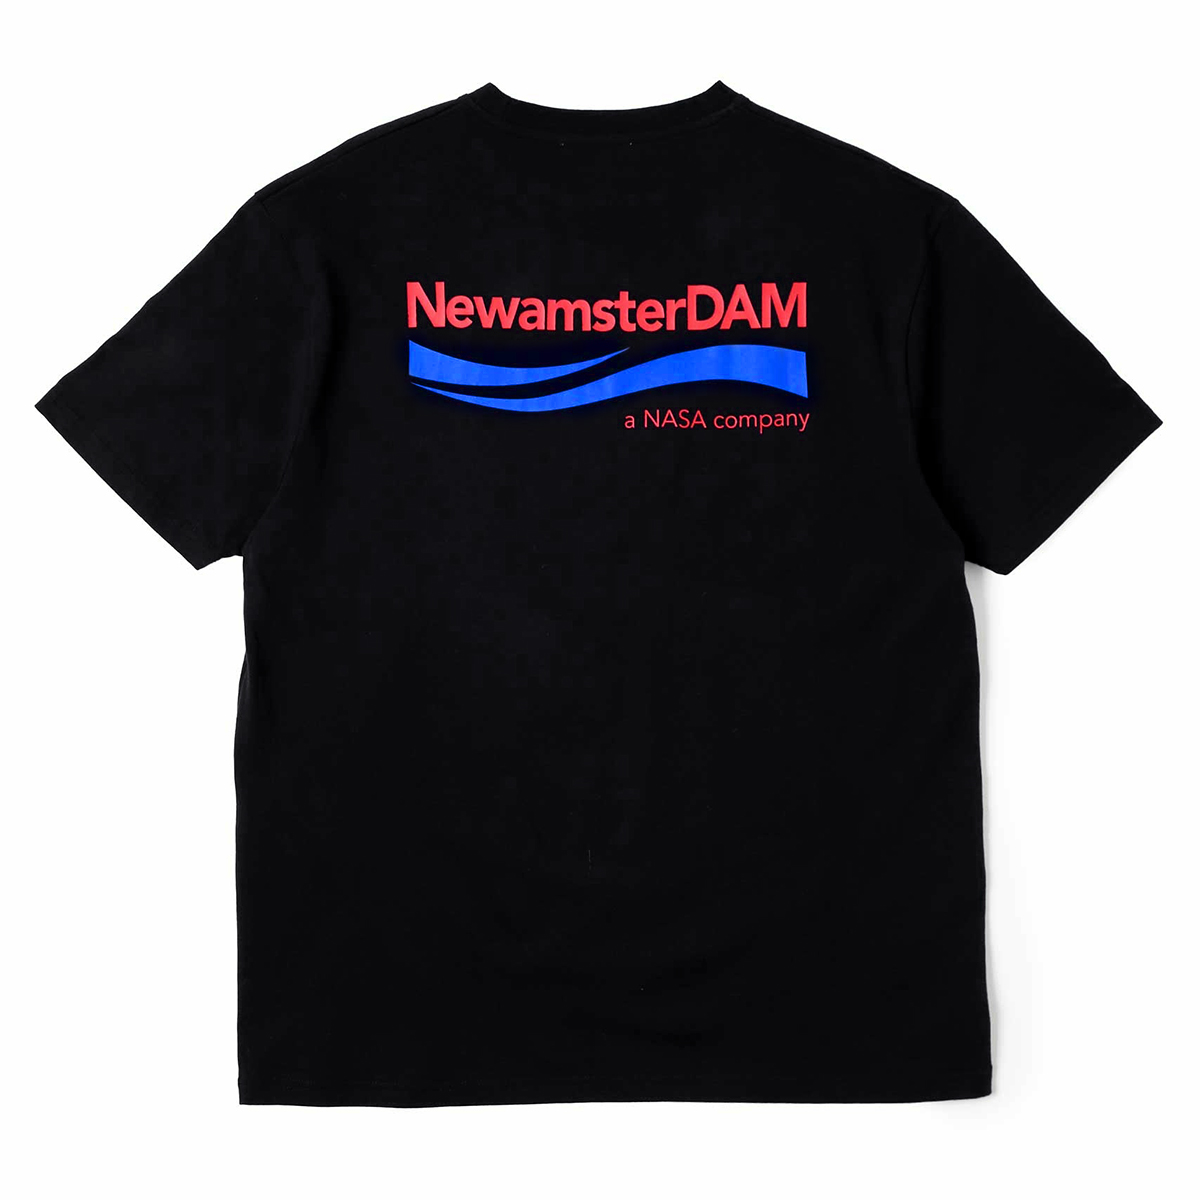 NewAmster-DAM Tee - Black